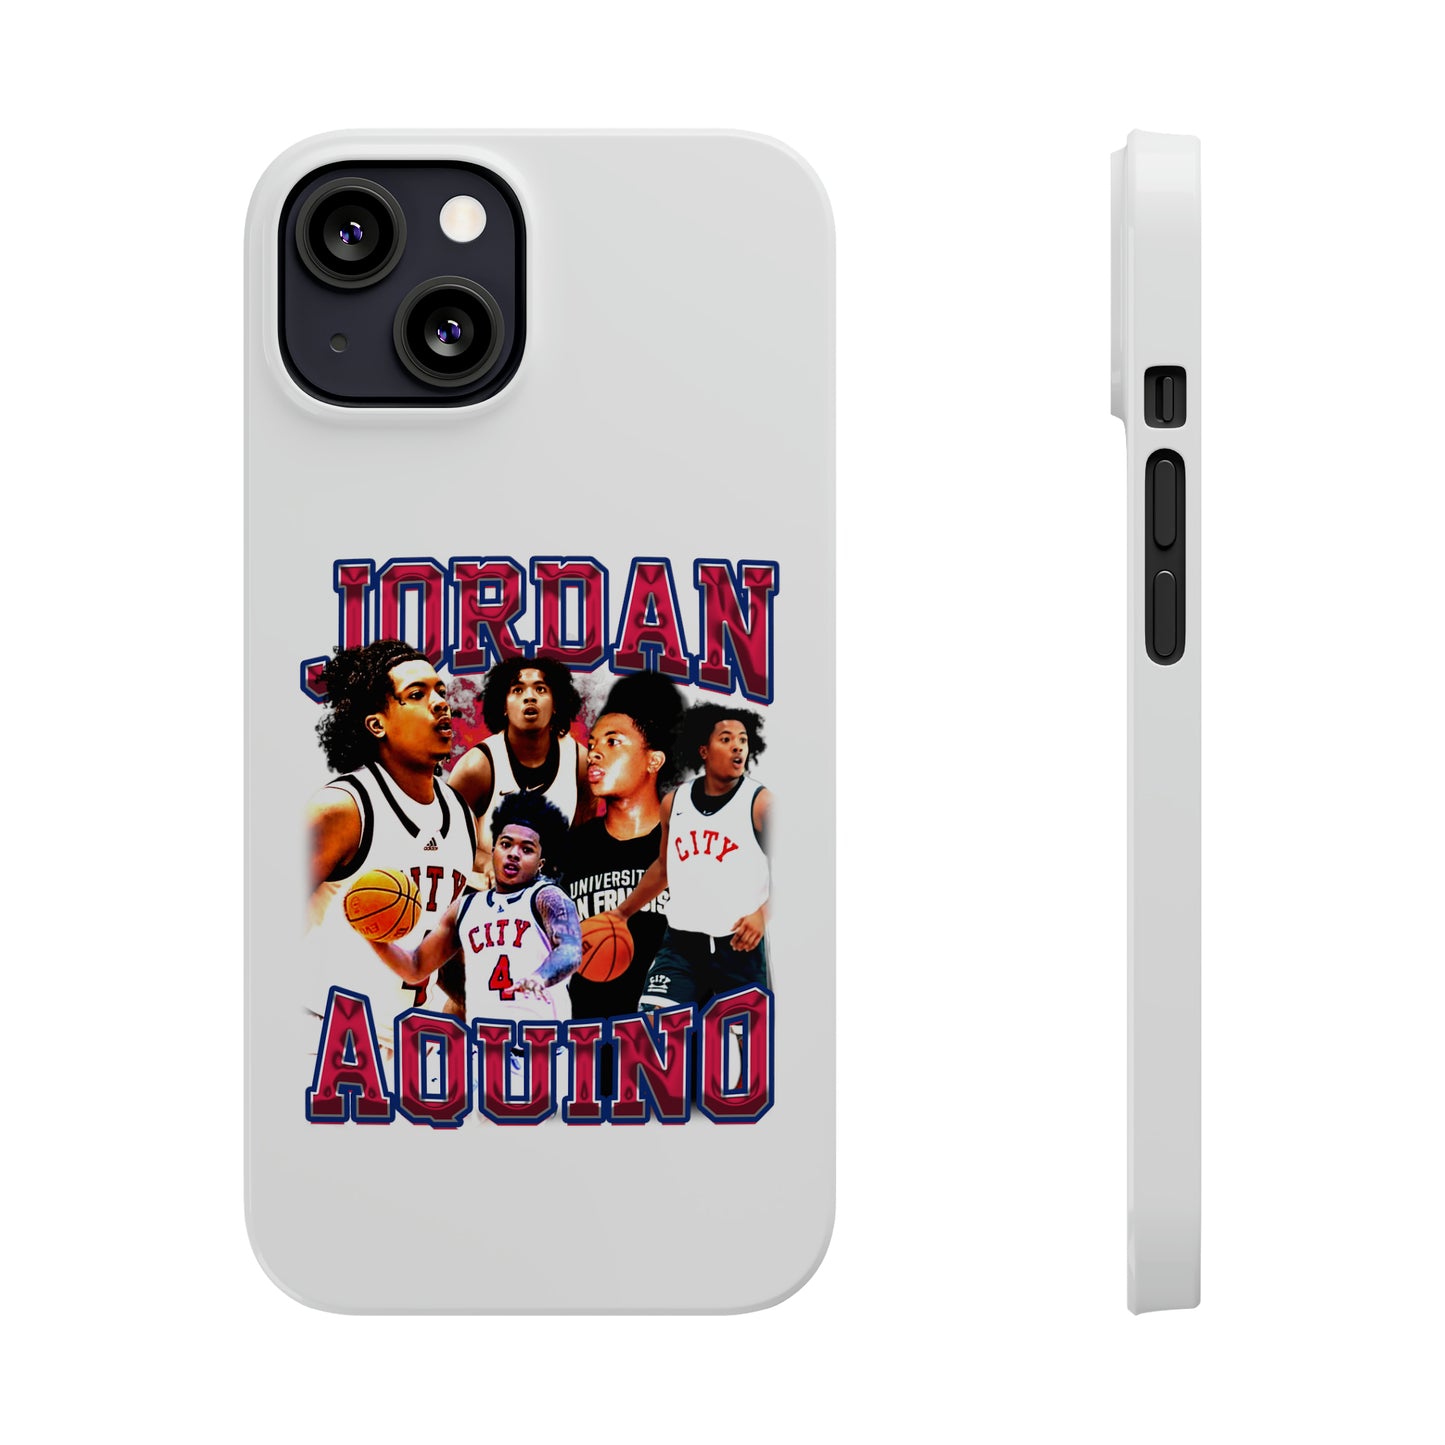 Jordan Aquino Slim Phone Cases